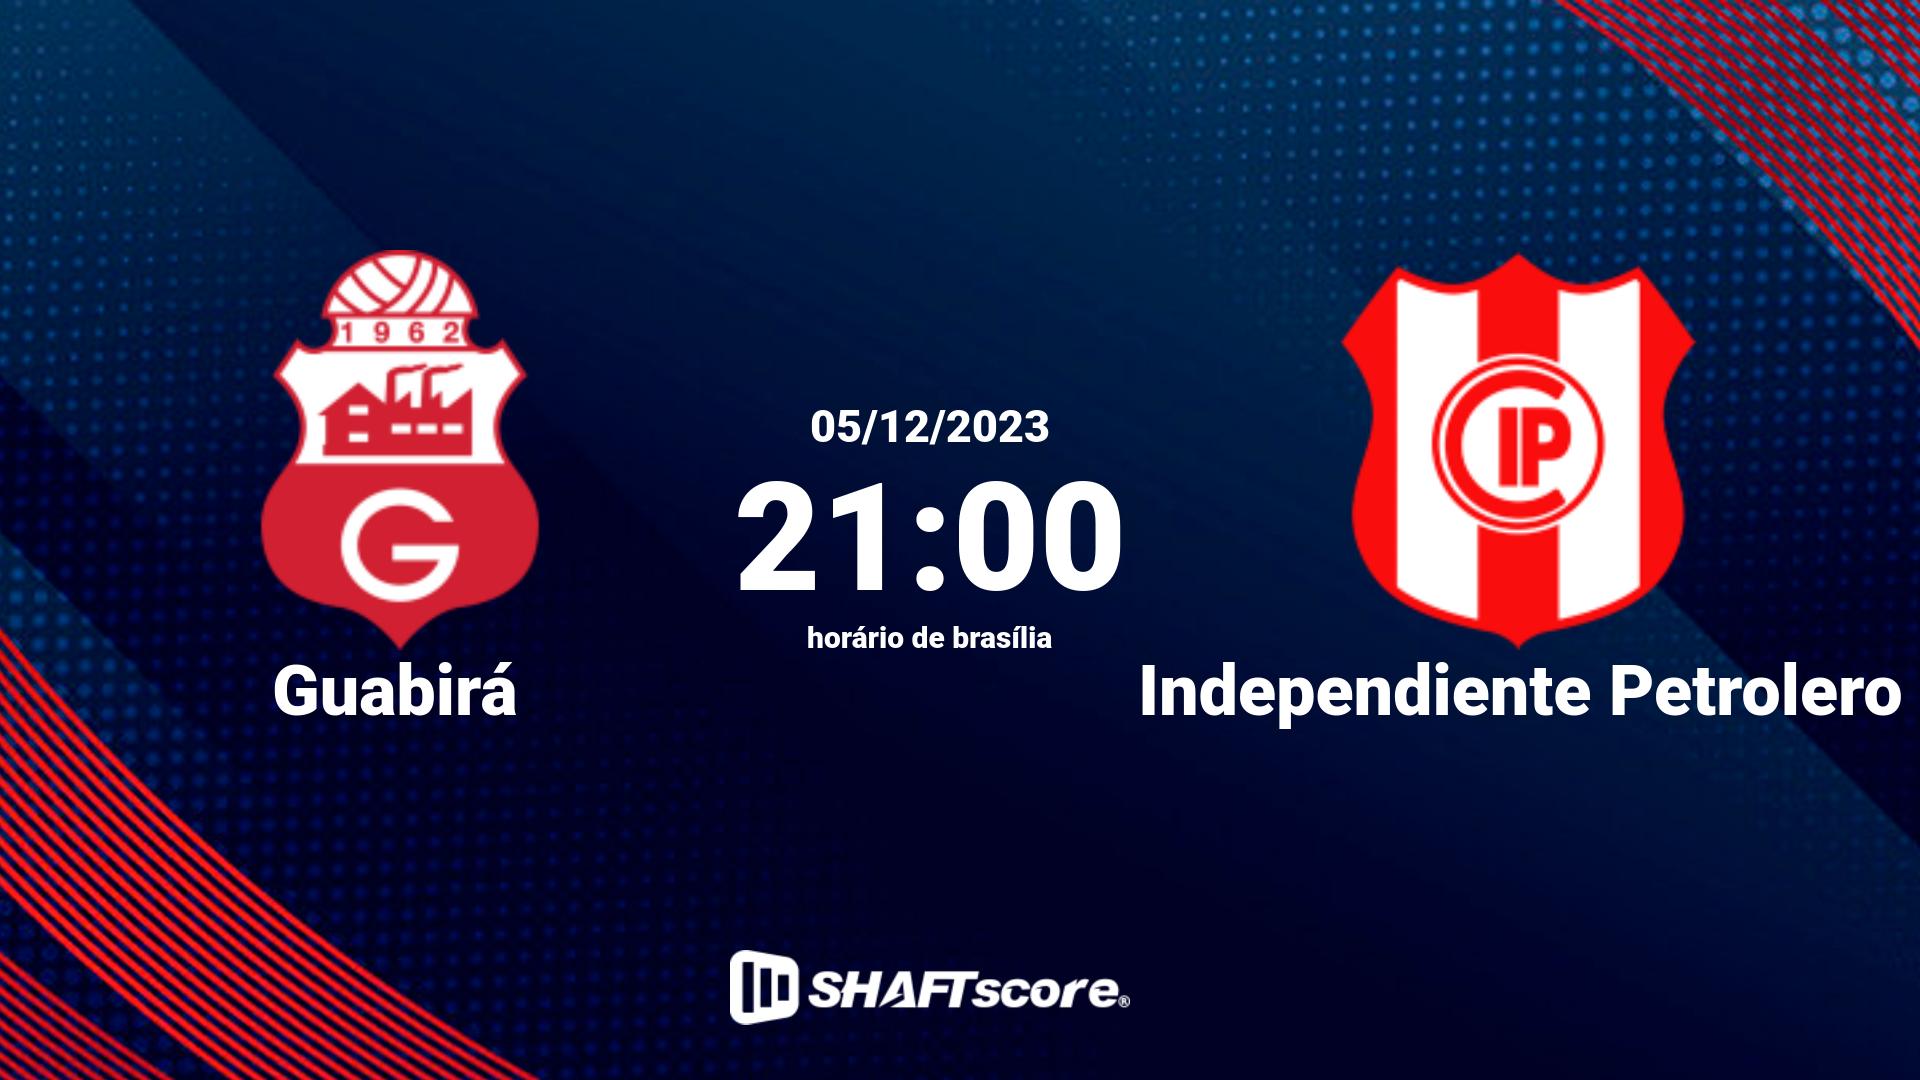 Estatísticas do jogo Guabirá vs Independiente Petrolero 05.12 21:00